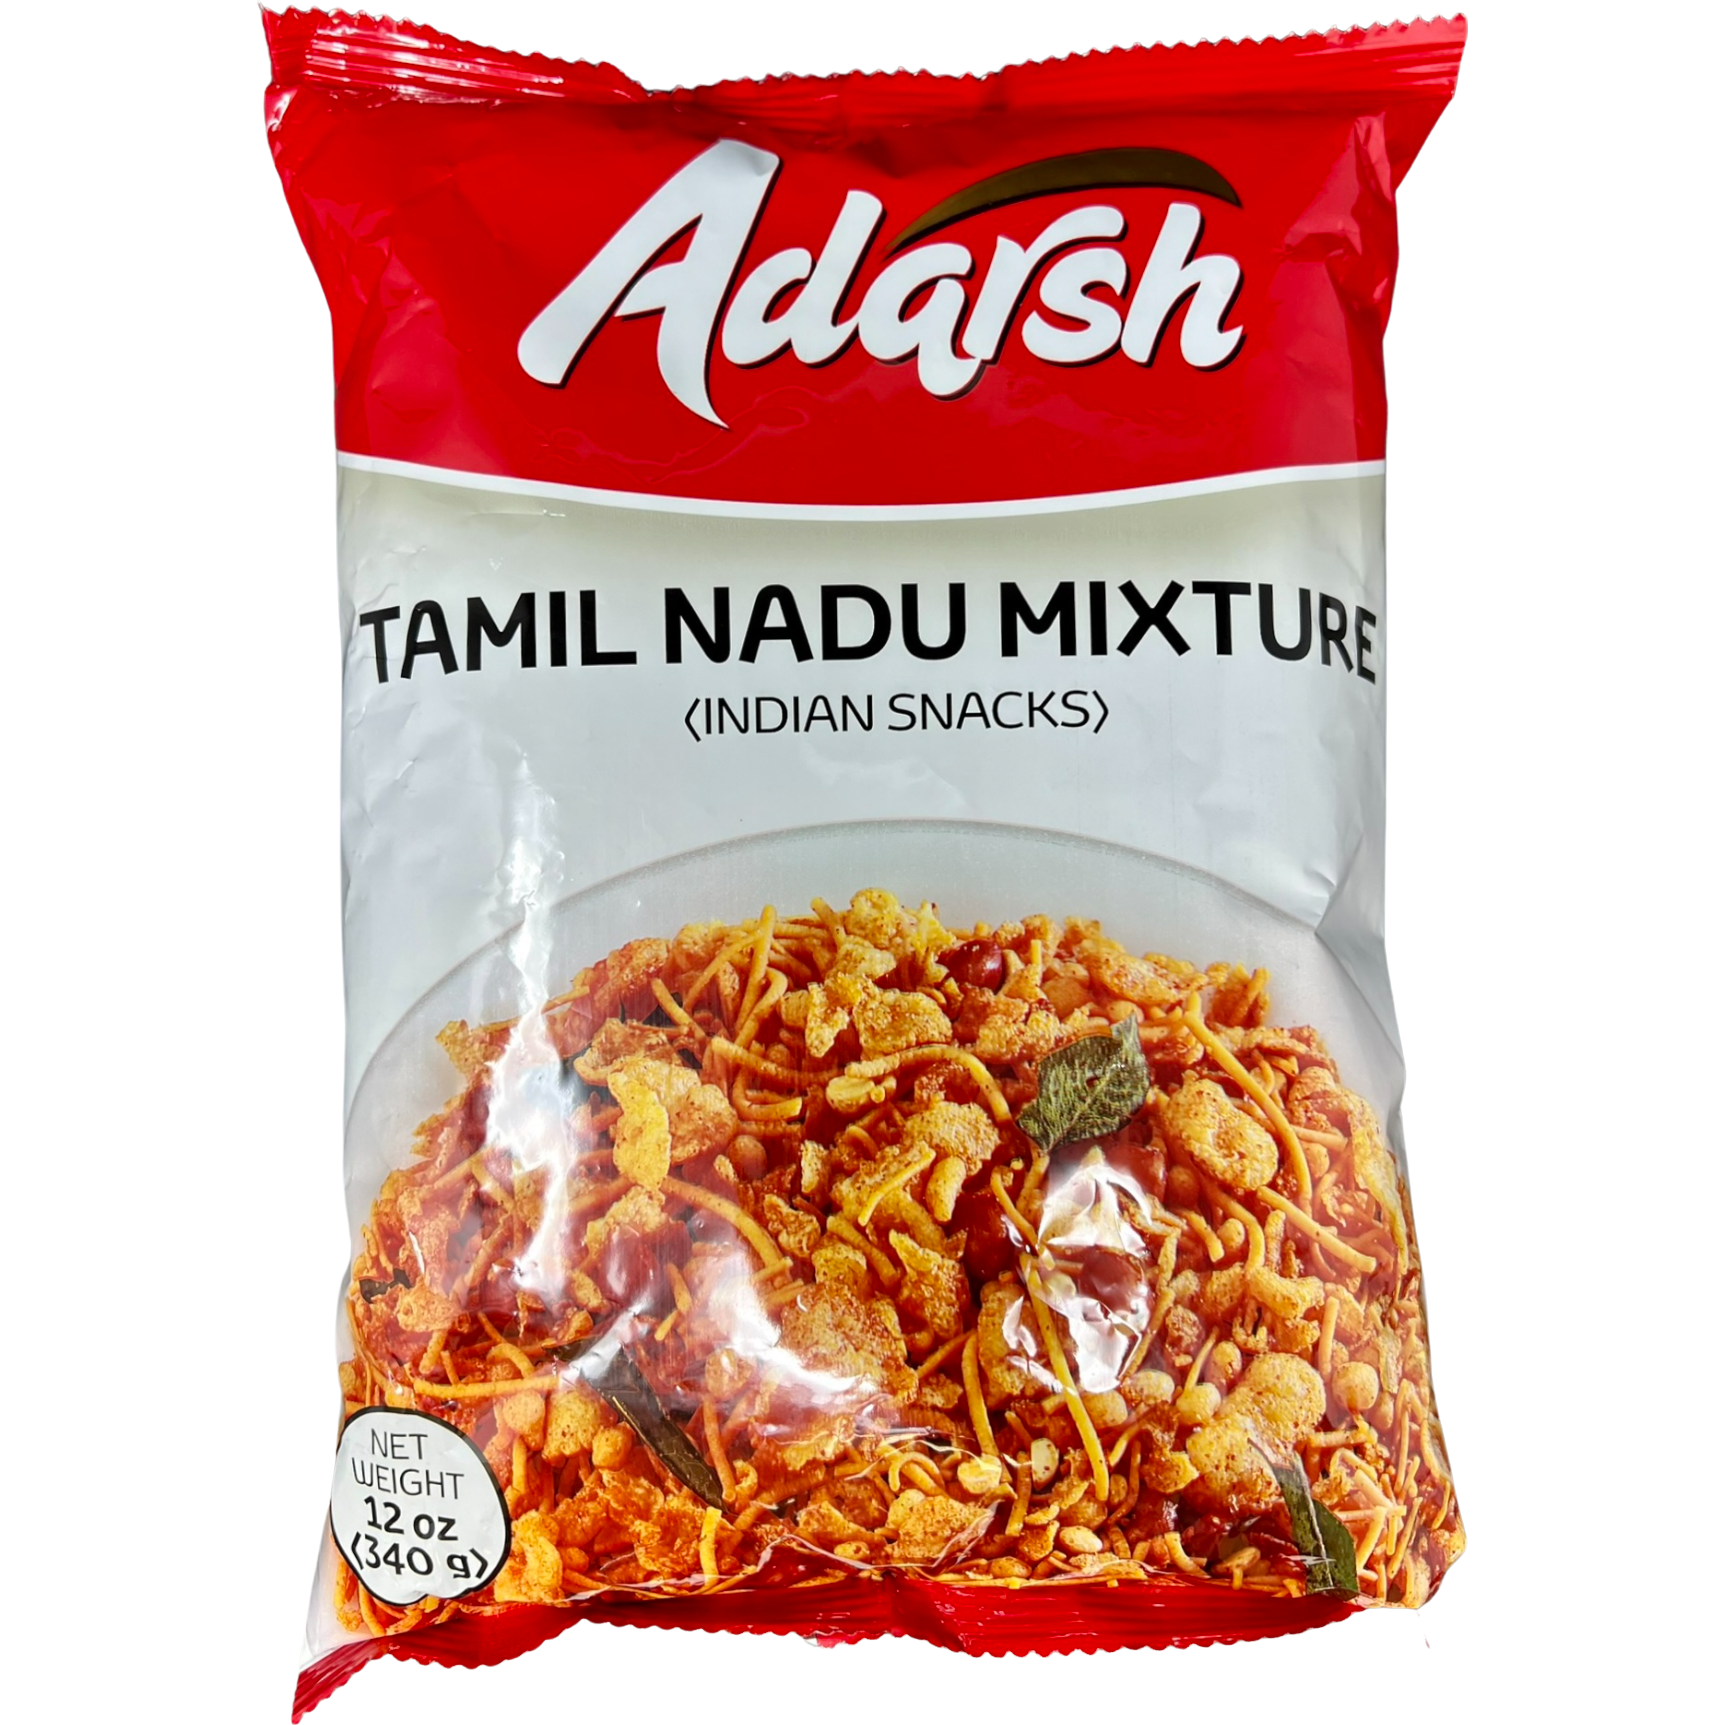 Pack of 2 - Adarsh Tamil Nadu Mixture - 340 Gm (12 Oz)